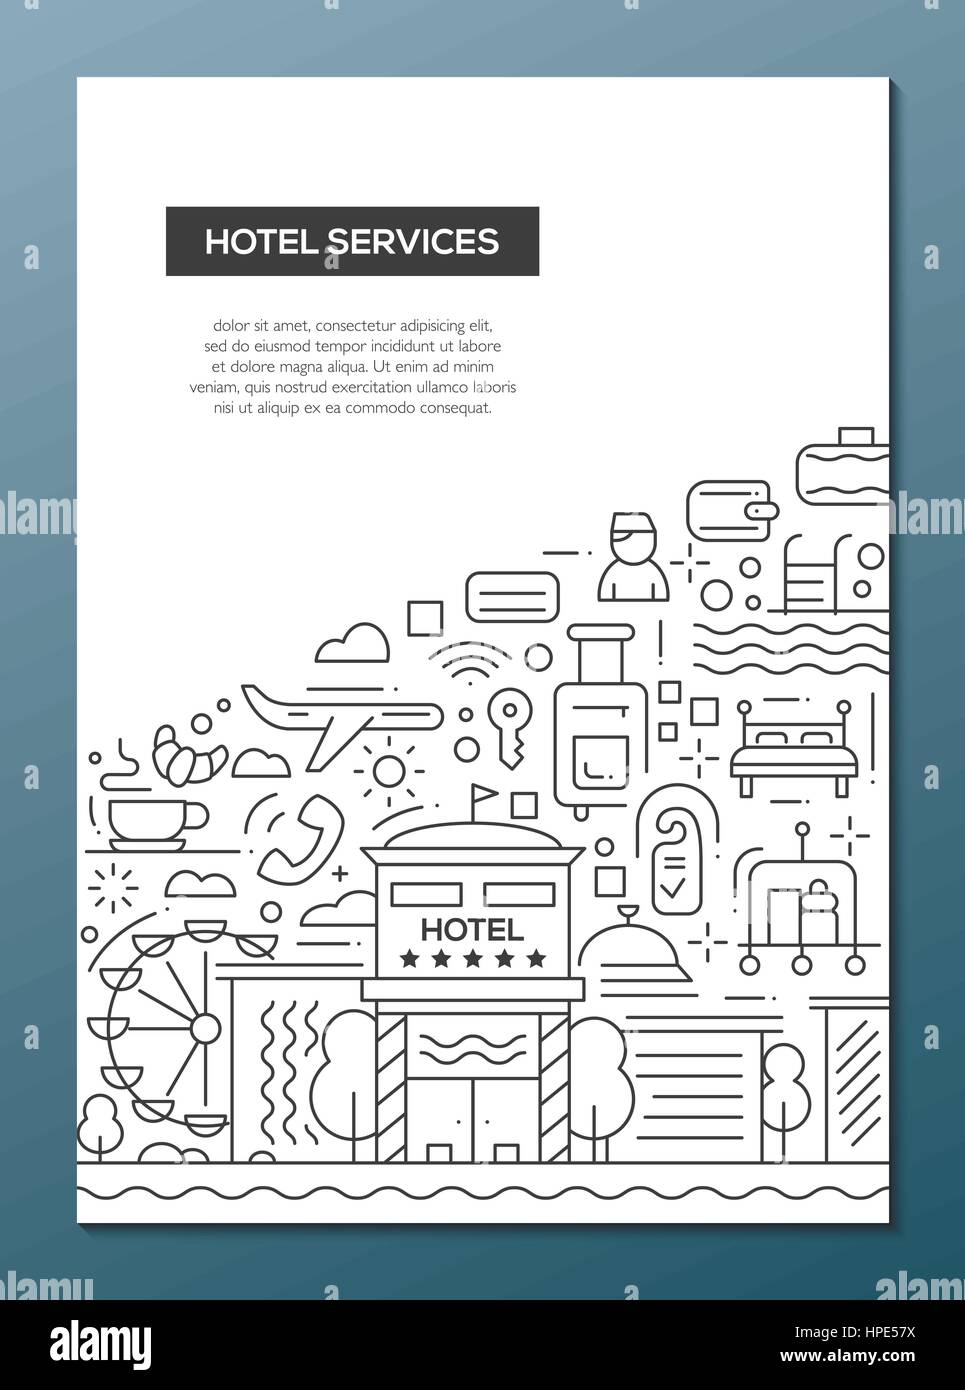 Hotel Dienstleistungen Line Design Broschure Plakat Vorlage Stock Vektorgrafik Alamy